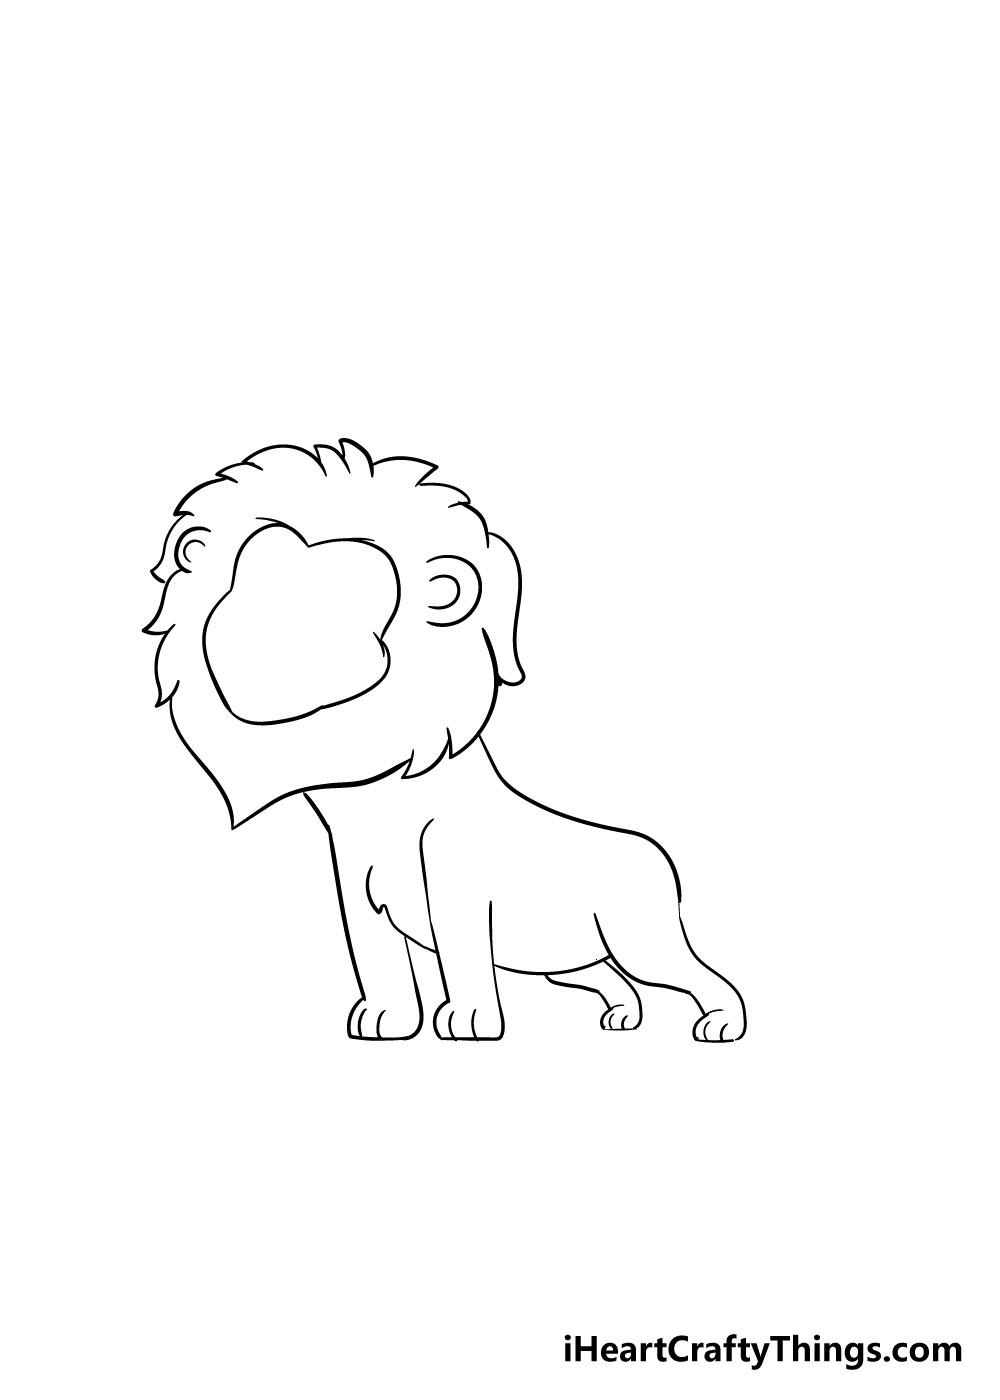 How to draw a lion 5 - Hướng dẫn cách vẽ con sư tử đơn giản với 8 bước cơ bản